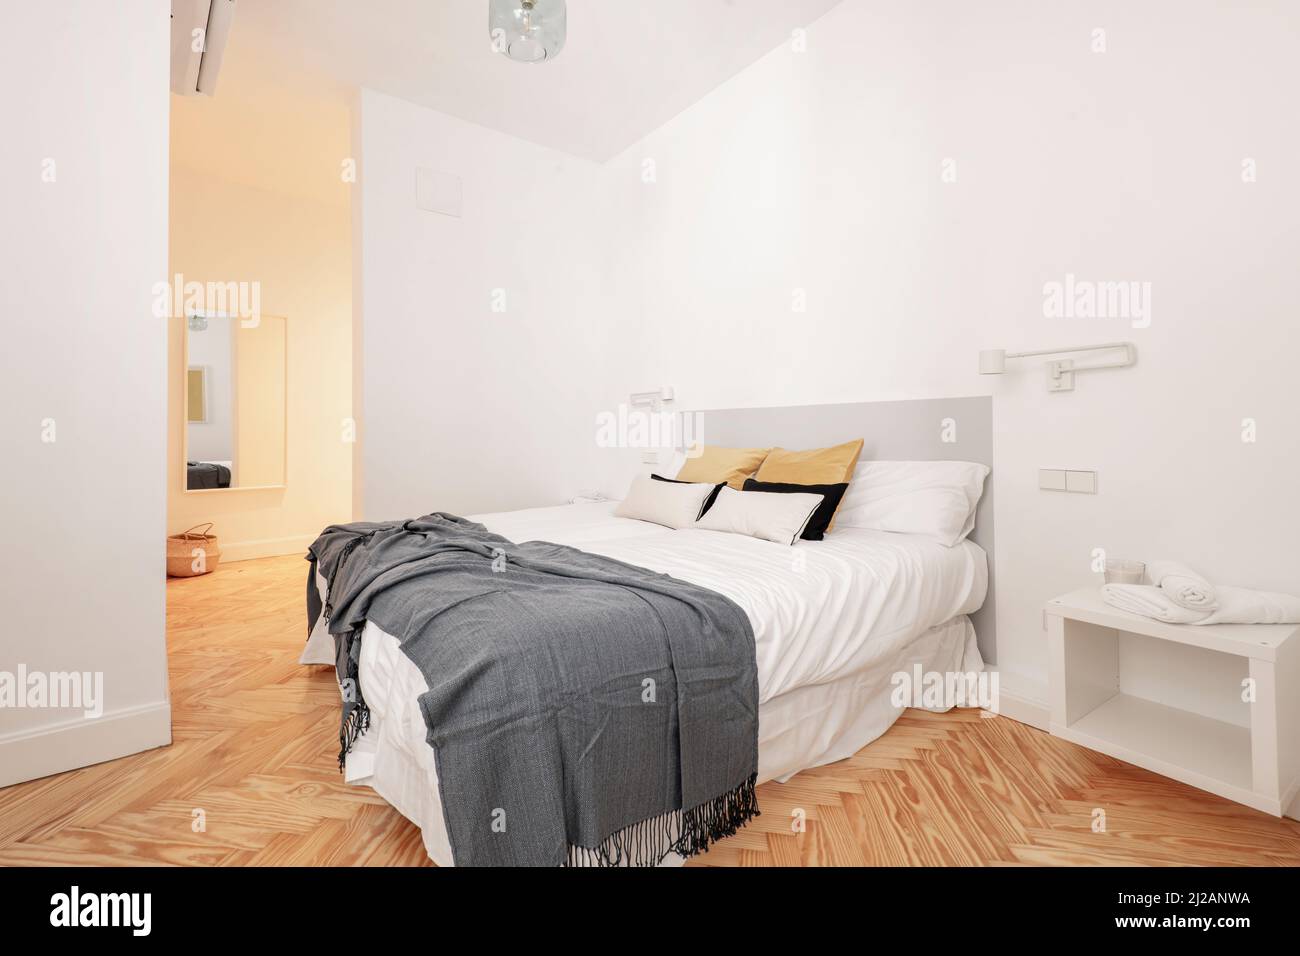 Schlafzimmer mit großem Bett mit vielen Kissen, zwei Nachttischen mit einziehbaren Lampen, weiße Zimmerei an den Türen, Kommode mit Spiegel und Klimaanlage Stockfoto